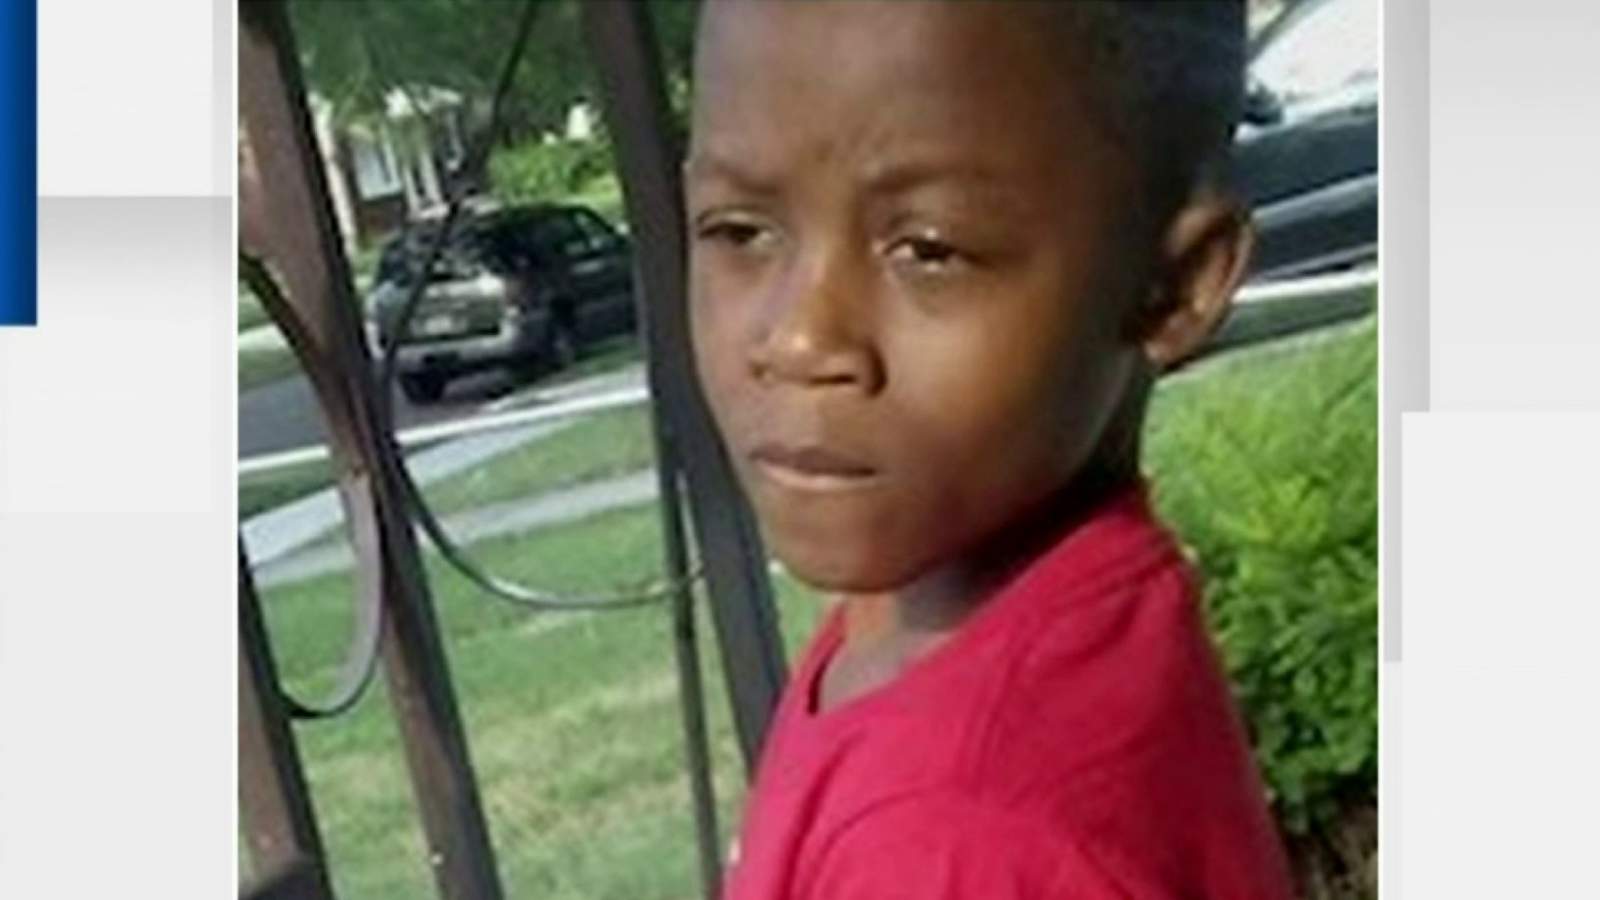 Siblings of 10-year-old killed in Warren shooting speak out